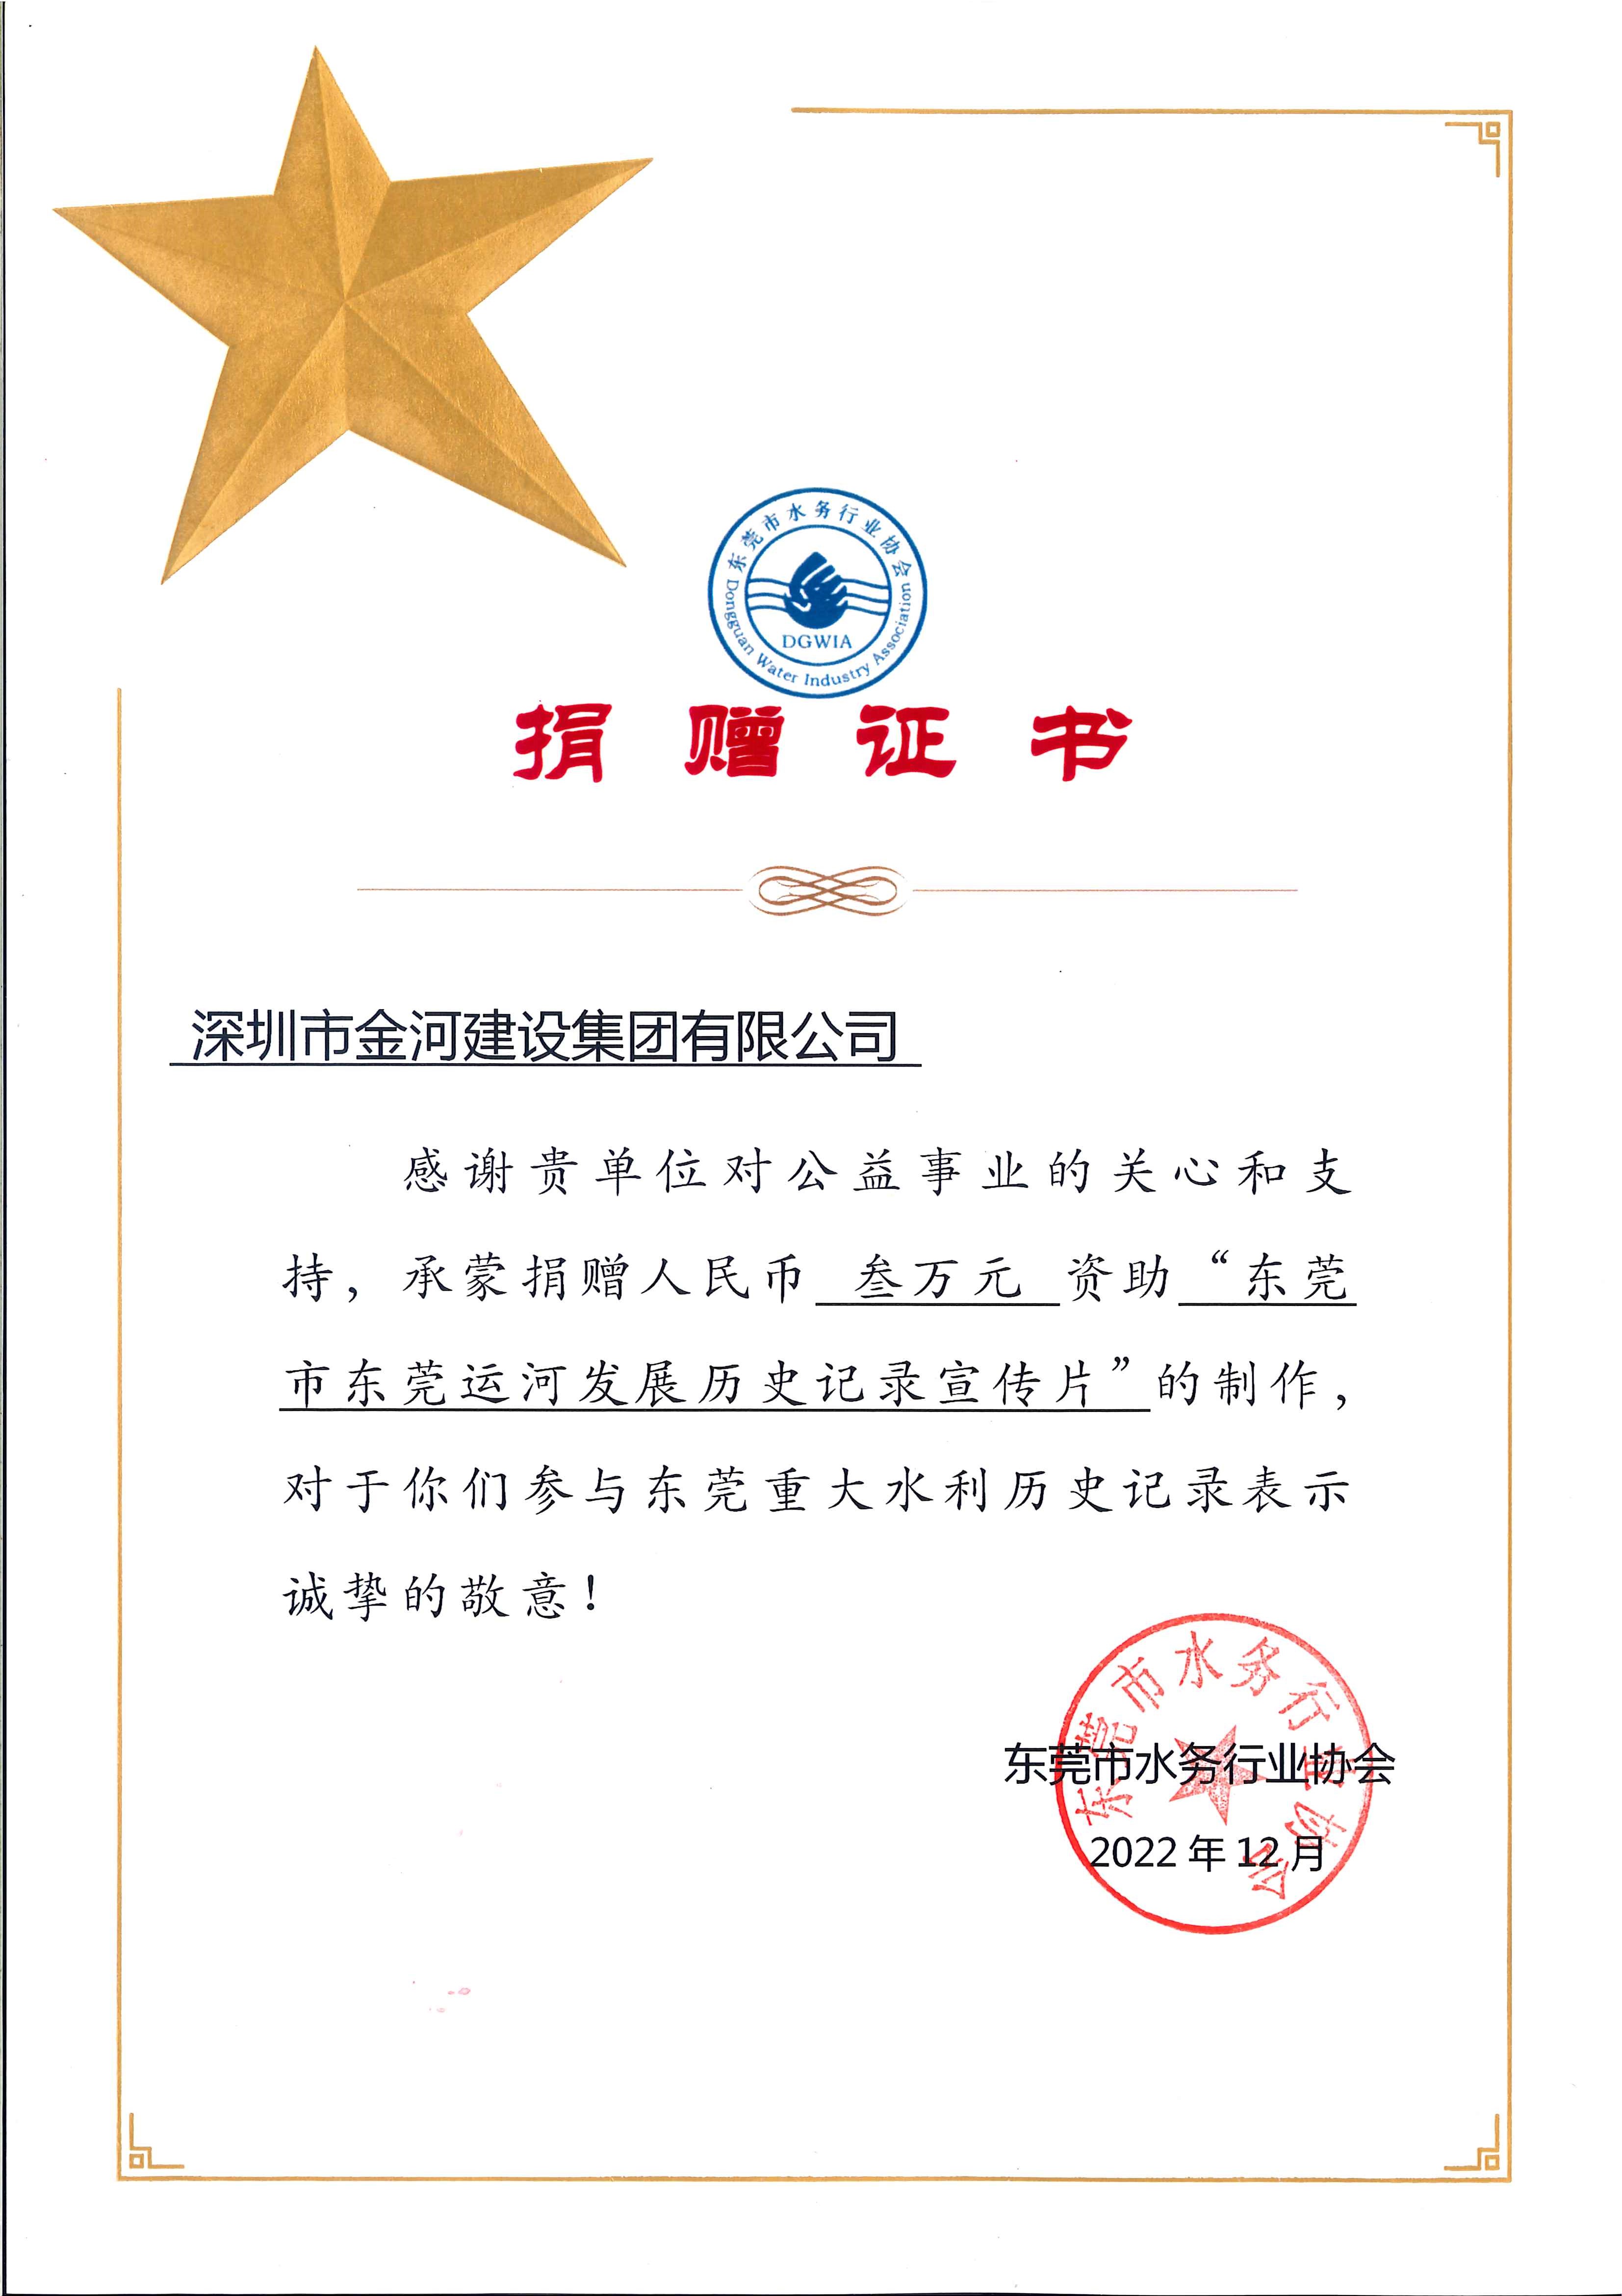 东莞运河发展历史记录宣传片捐赠证书